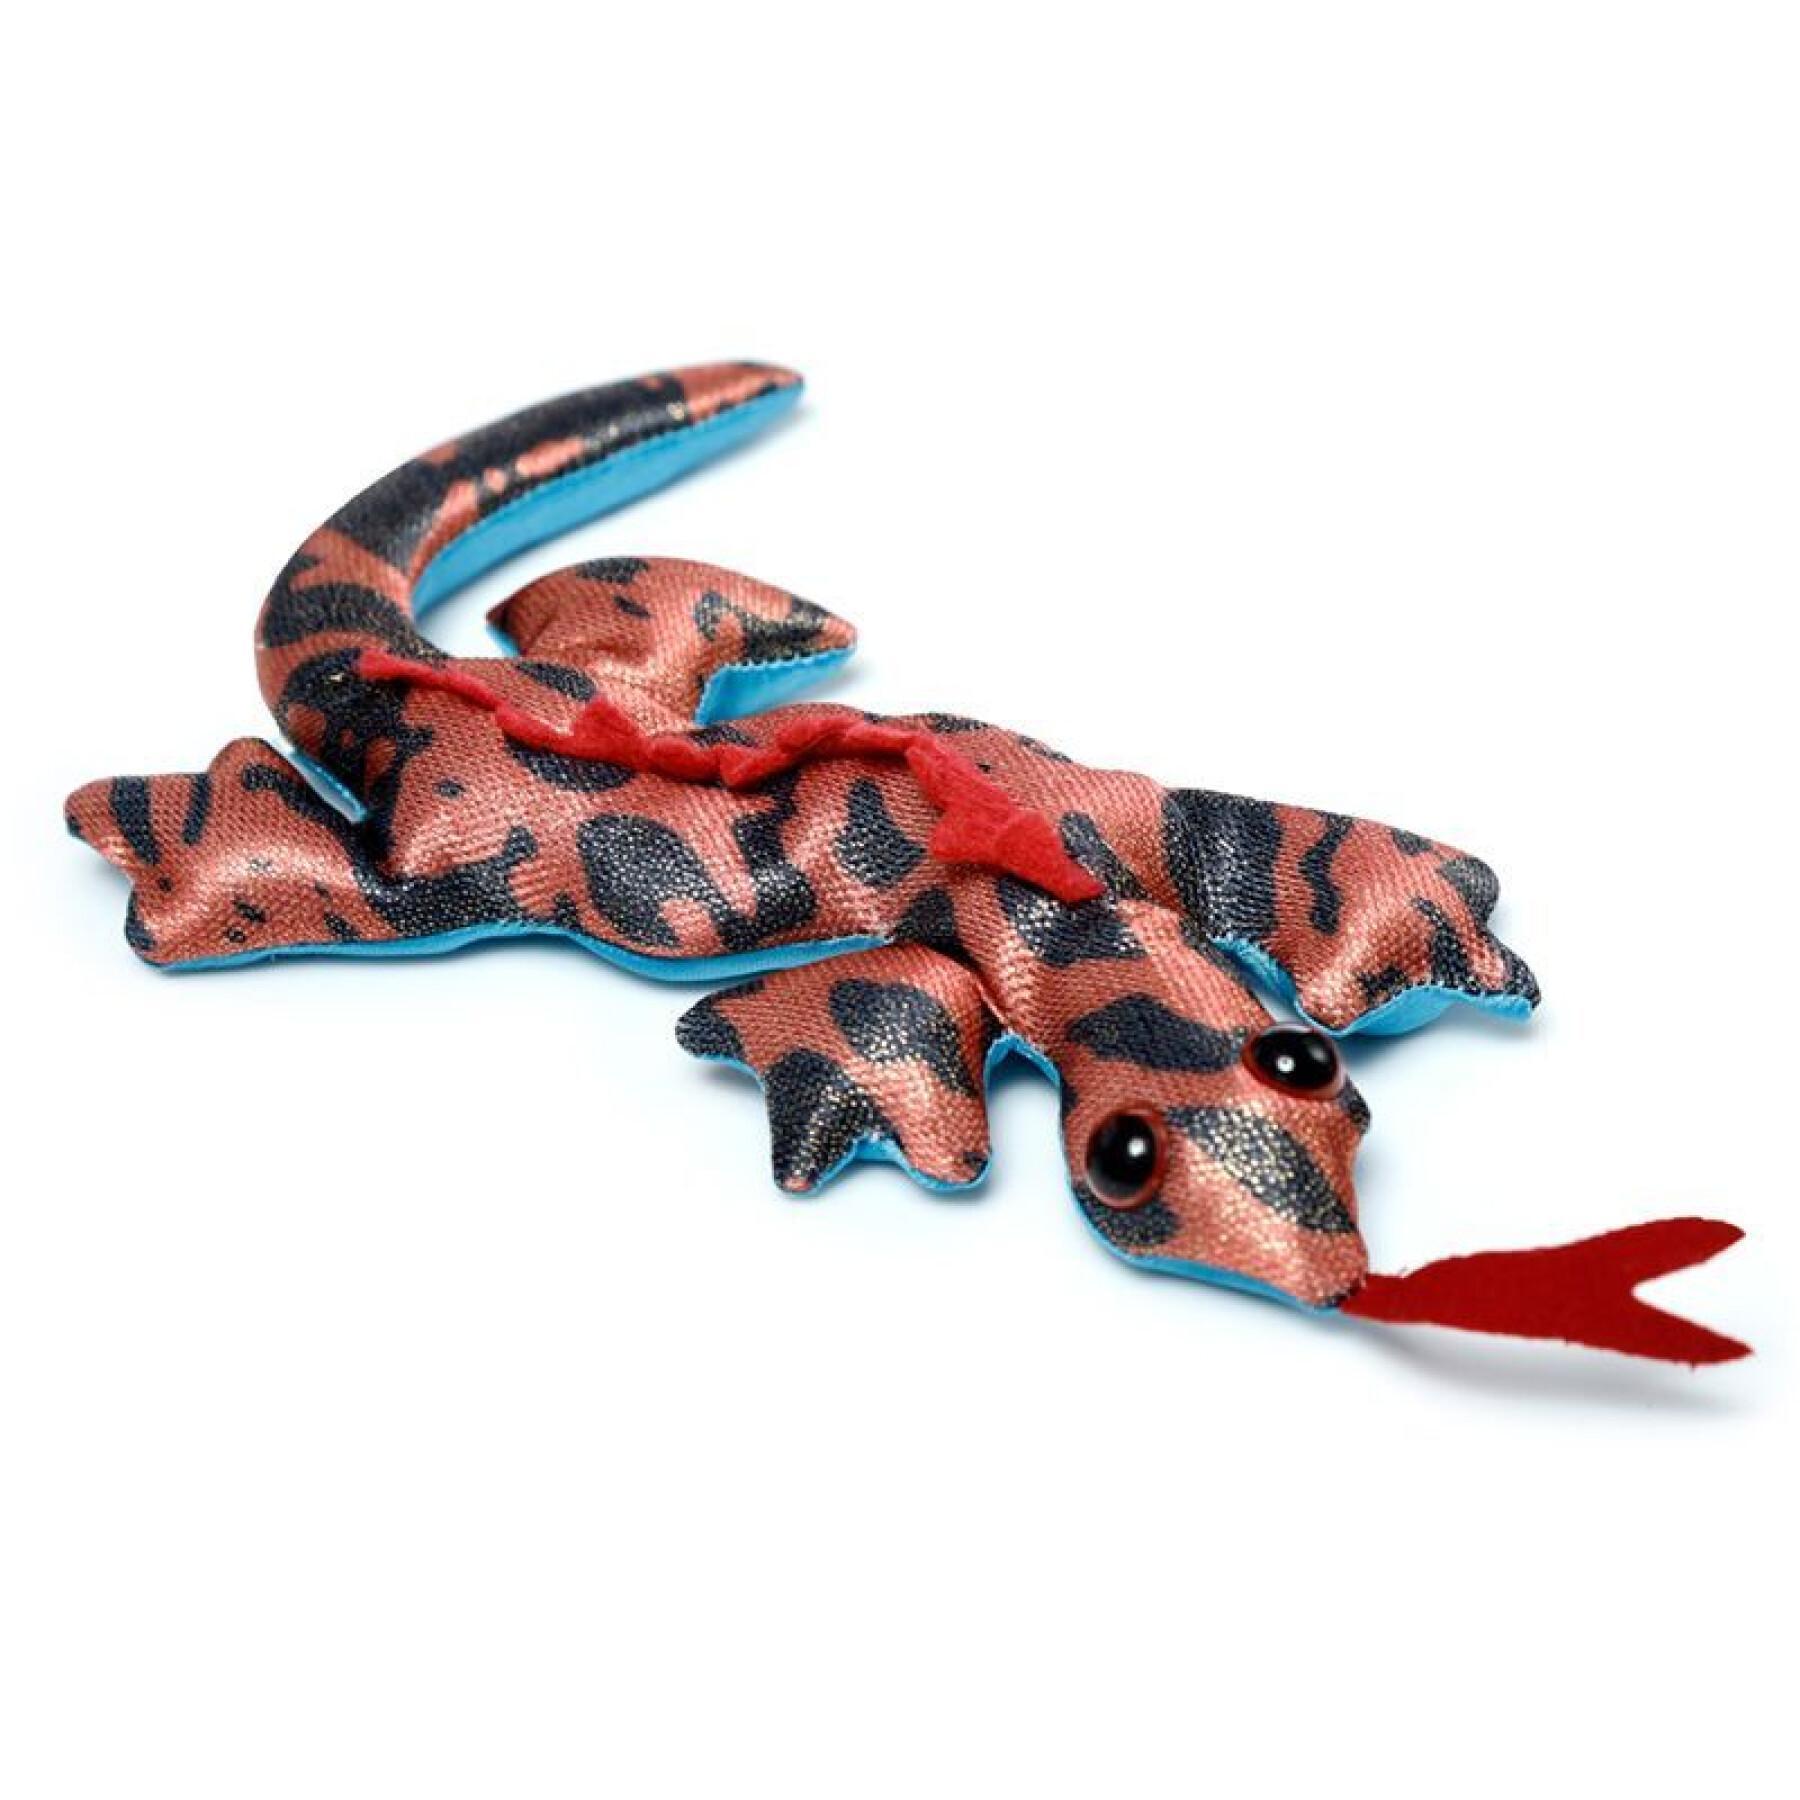 Salamander sand animal figurine Puckator